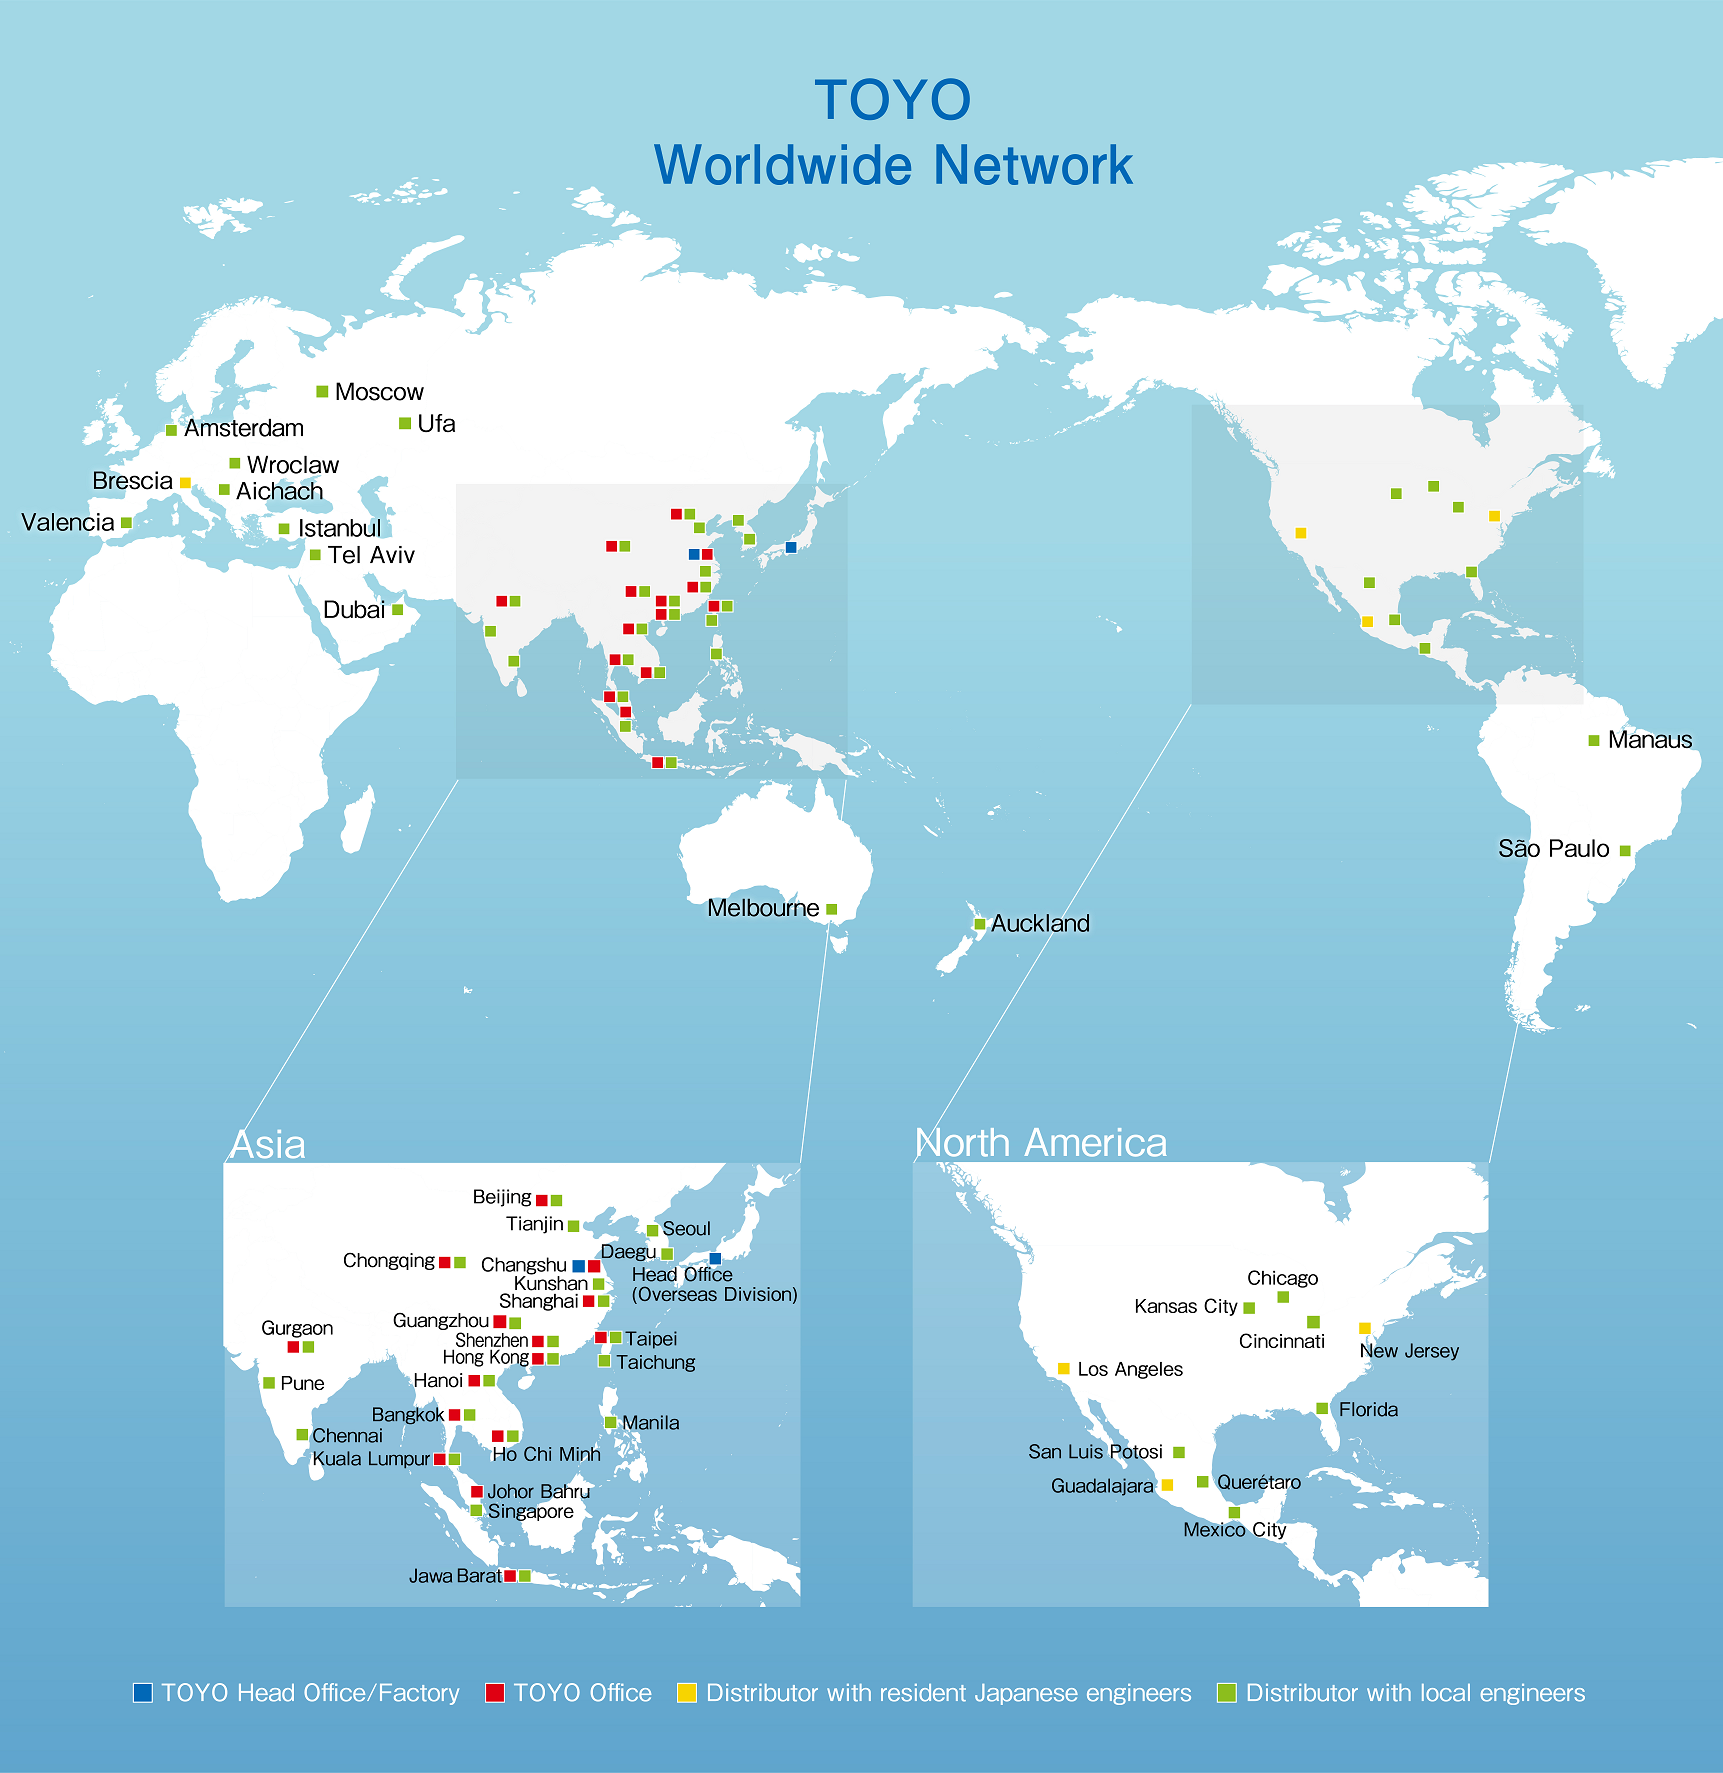 TOYO Worldwide Network